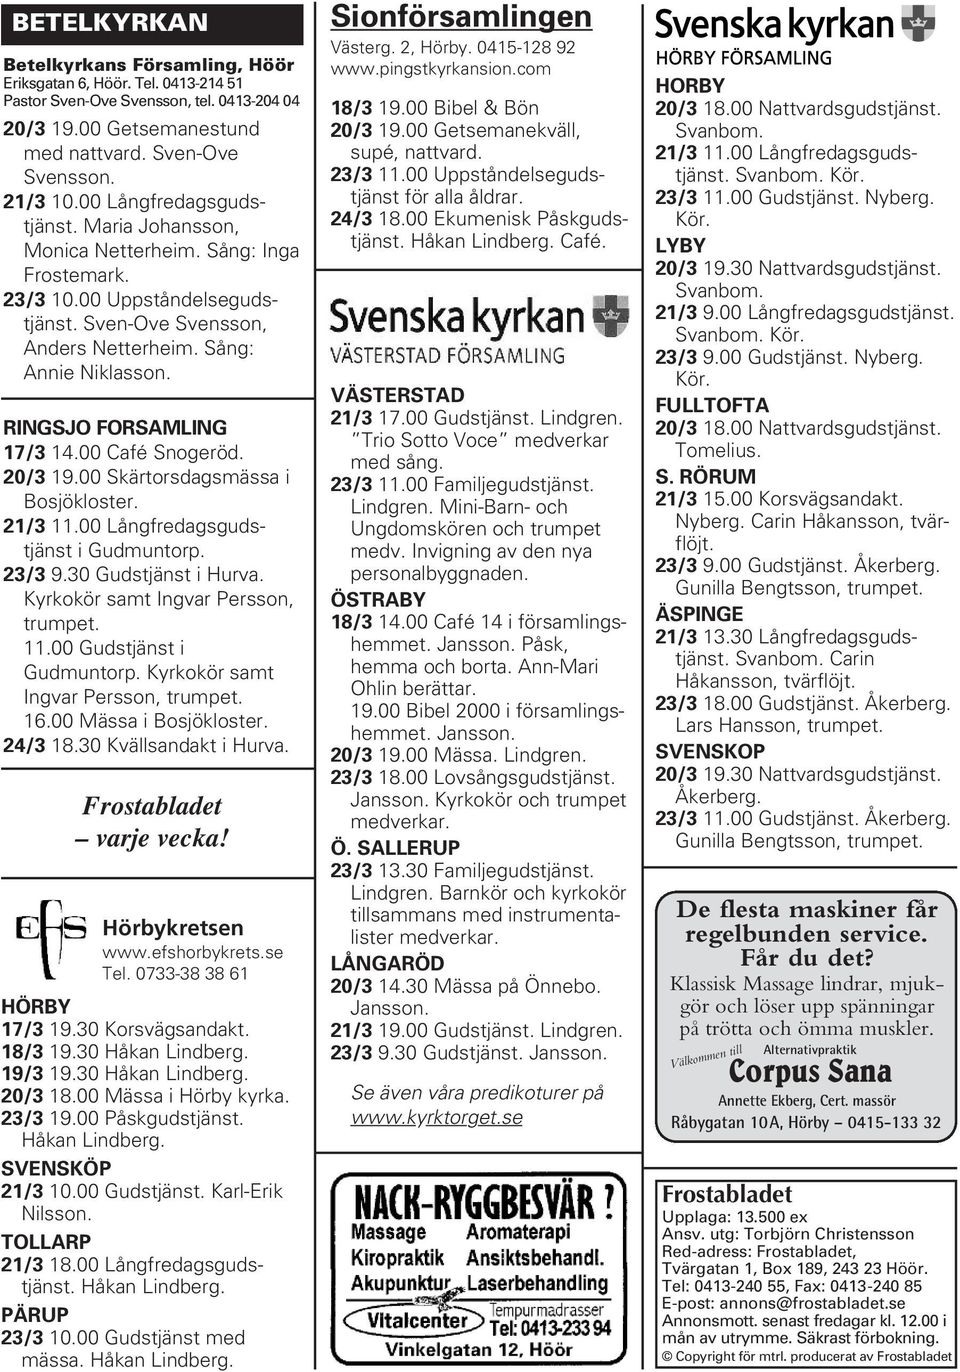 RINGSJO FORSAMLING 17/3 14.00 Café Snogeröd. 20/3 19.00 Skärtorsdagsmässa i Bosjökloster. 21/3 11.00 Långfredagsgudstjänst i Gudmuntorp. 23/3 9.30 Gudstjänst i Hurva.